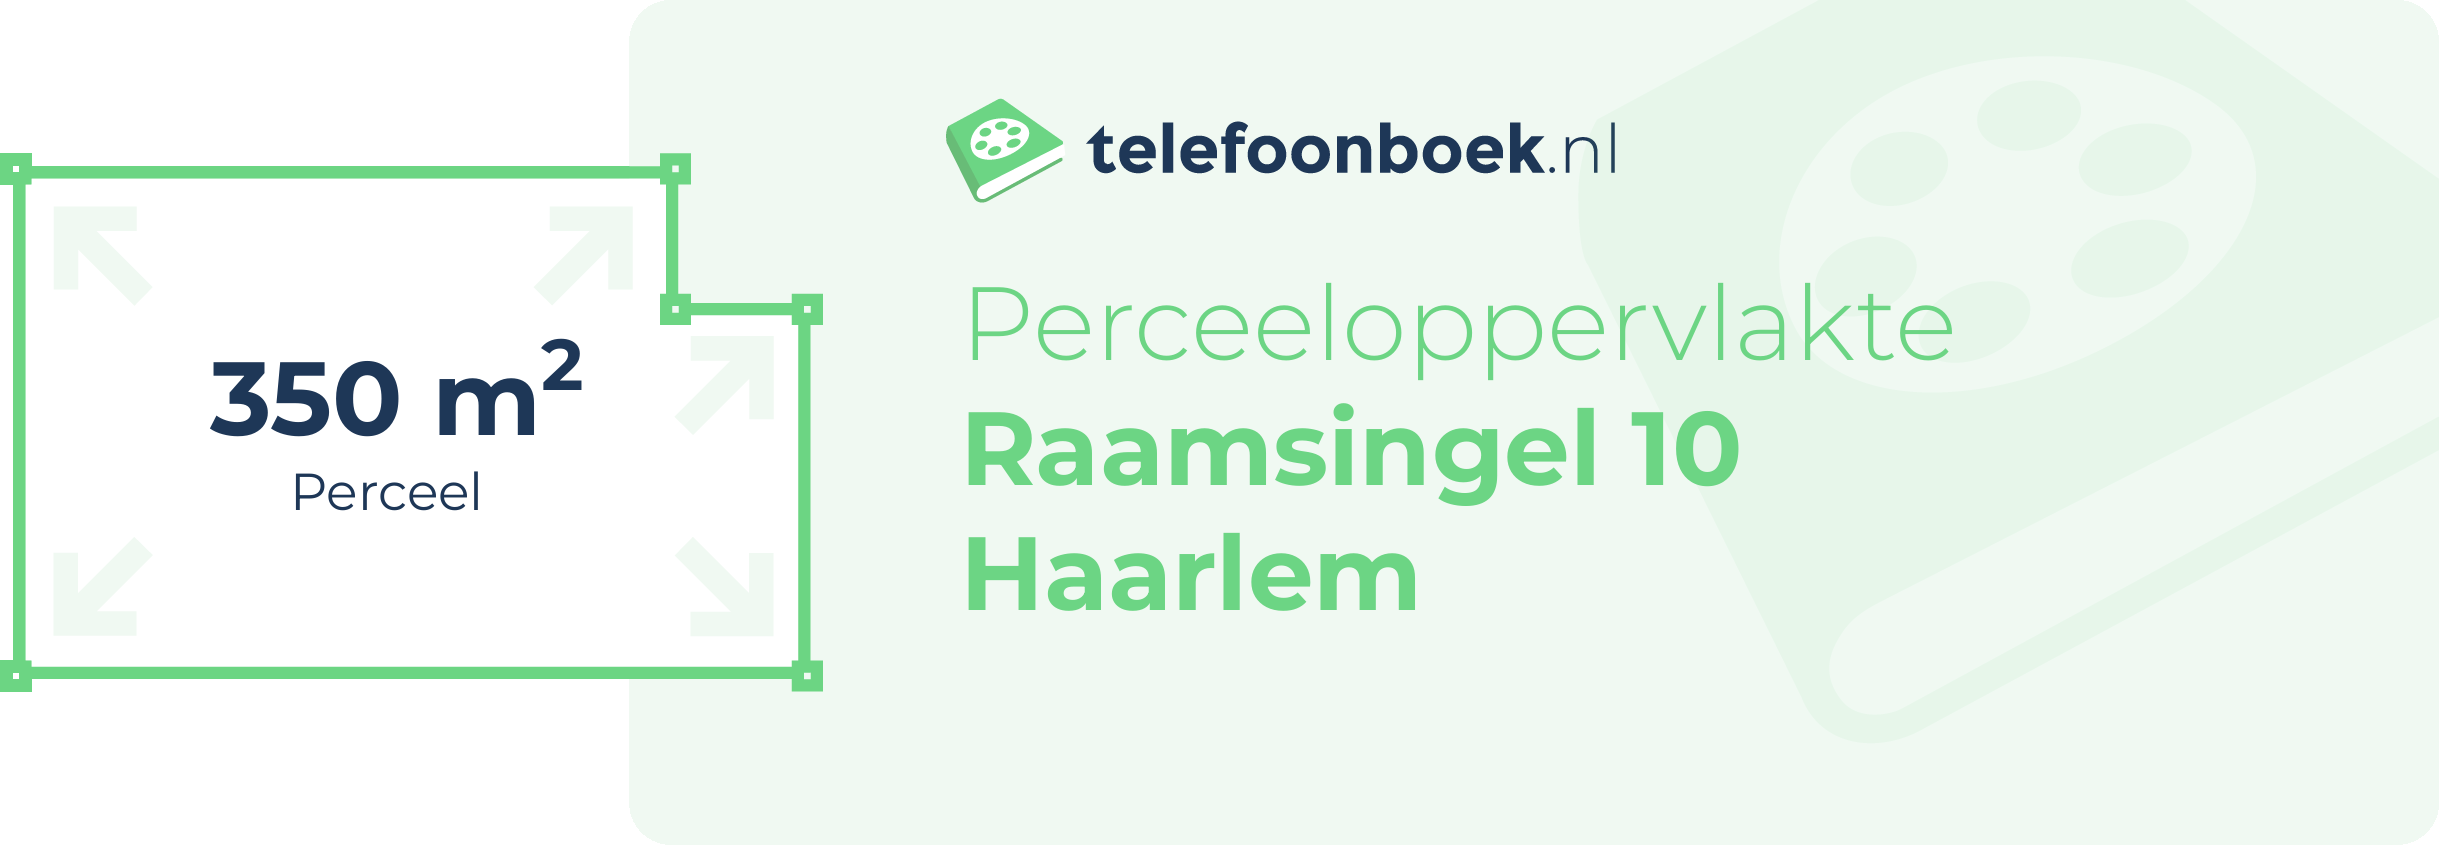 Perceeloppervlakte Raamsingel 10 Haarlem